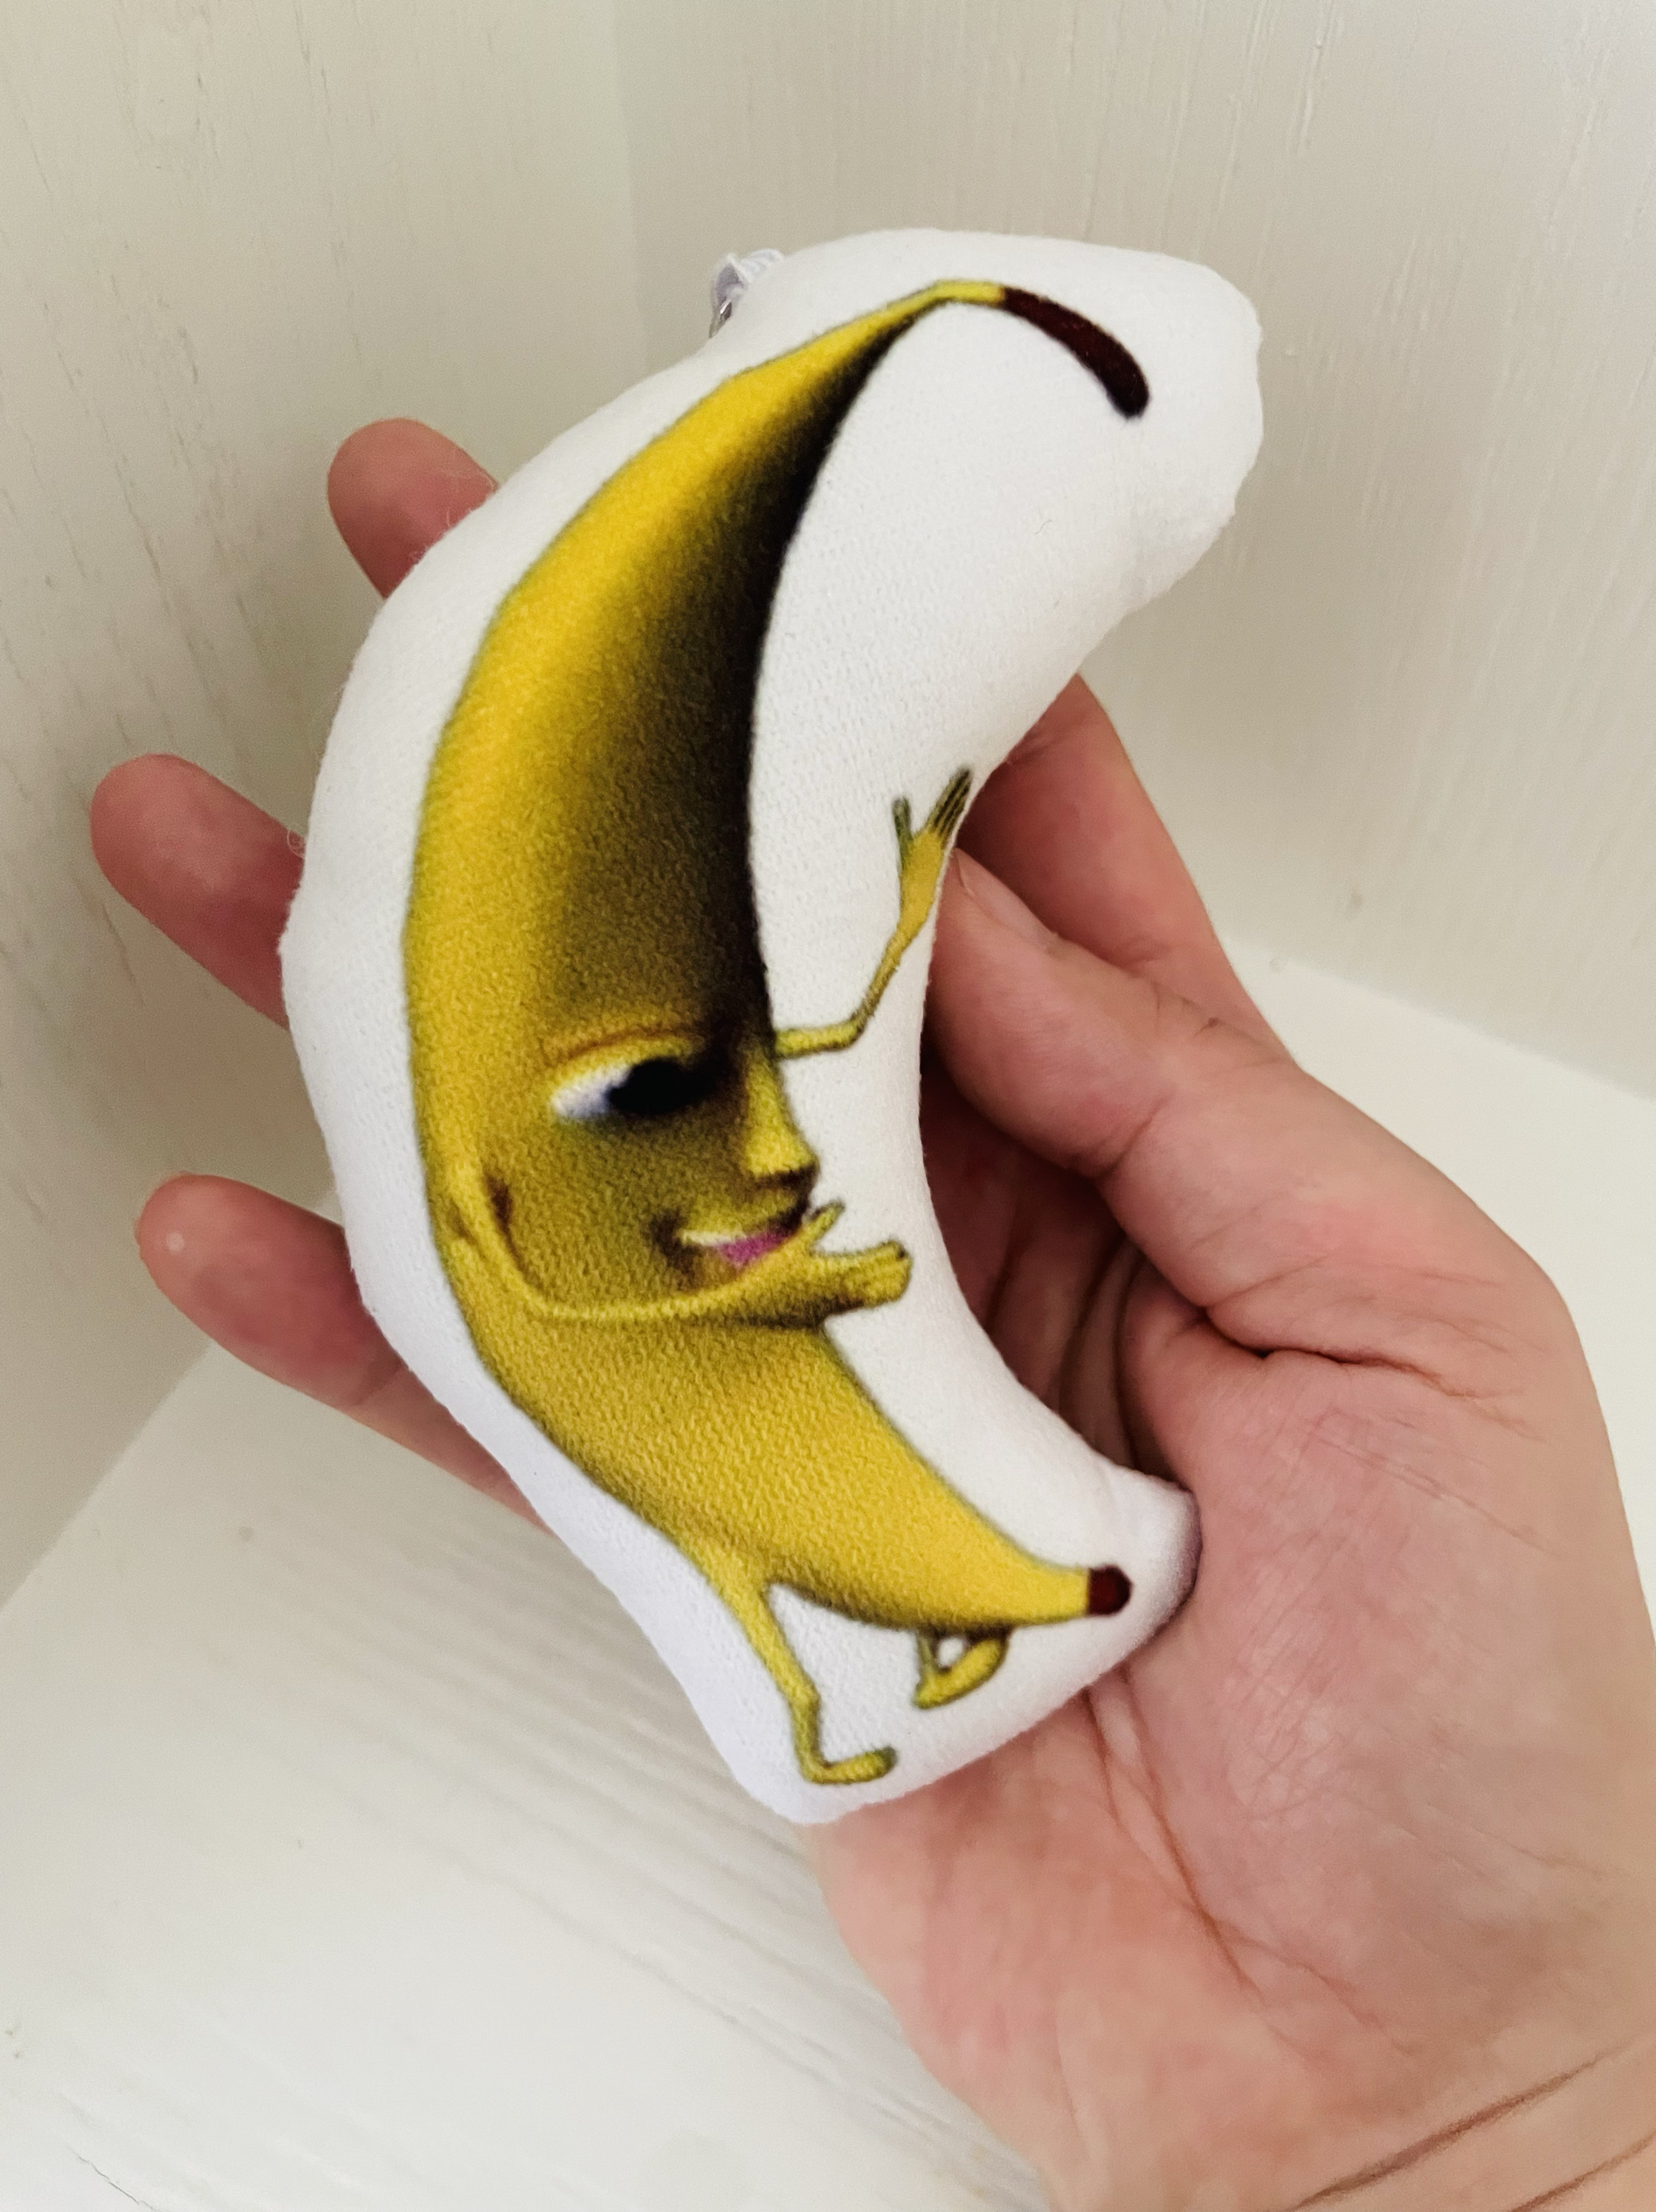 【新款一条大香蕉】会唱歌录音的大香蕉搞笑表情包鬼畜钥匙扣挂件